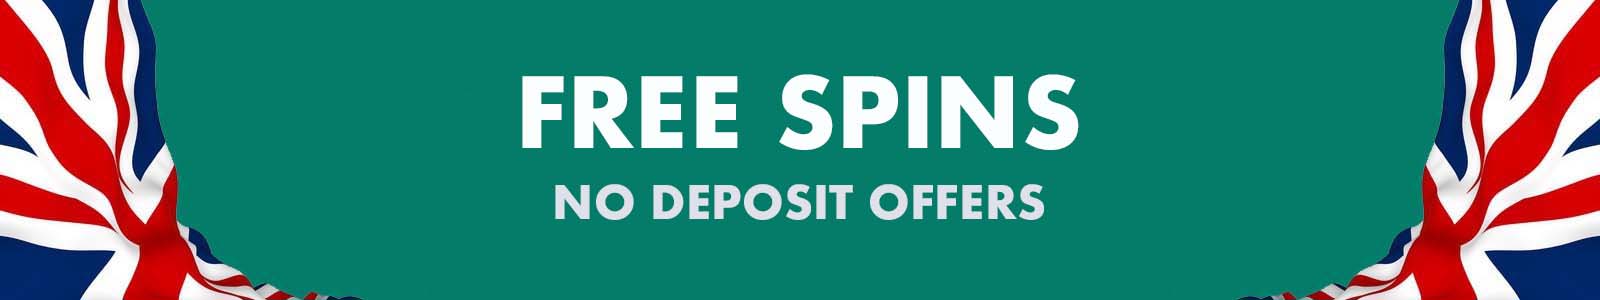 50 free spins no deposit 2020 uk